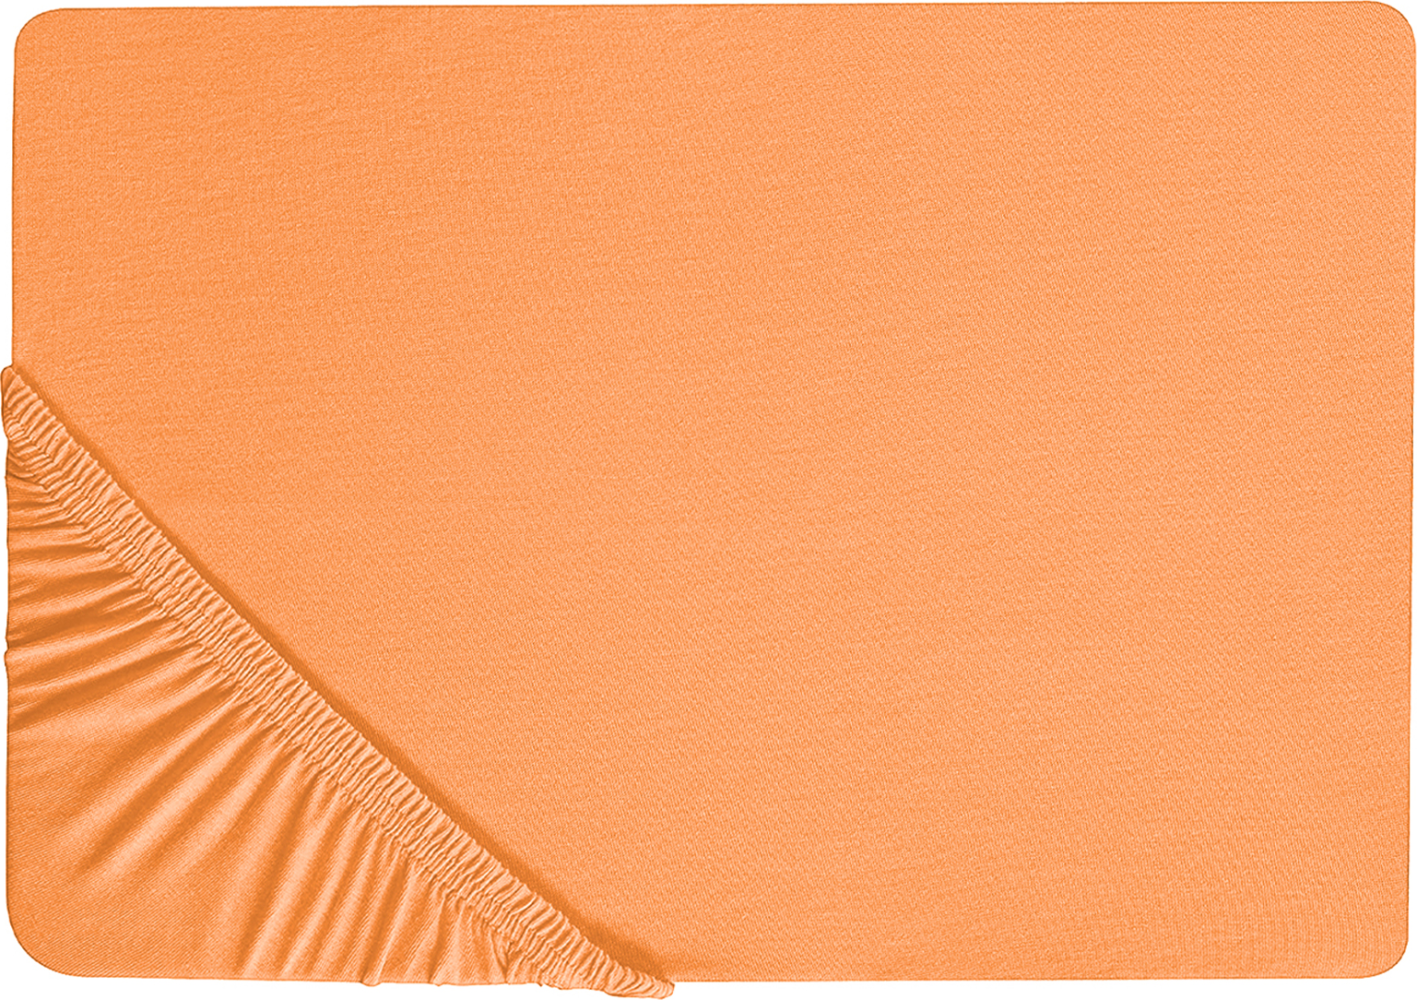 Spannbettlaken Baumwolle orange 140 x 200 cm JANBU Bild 1